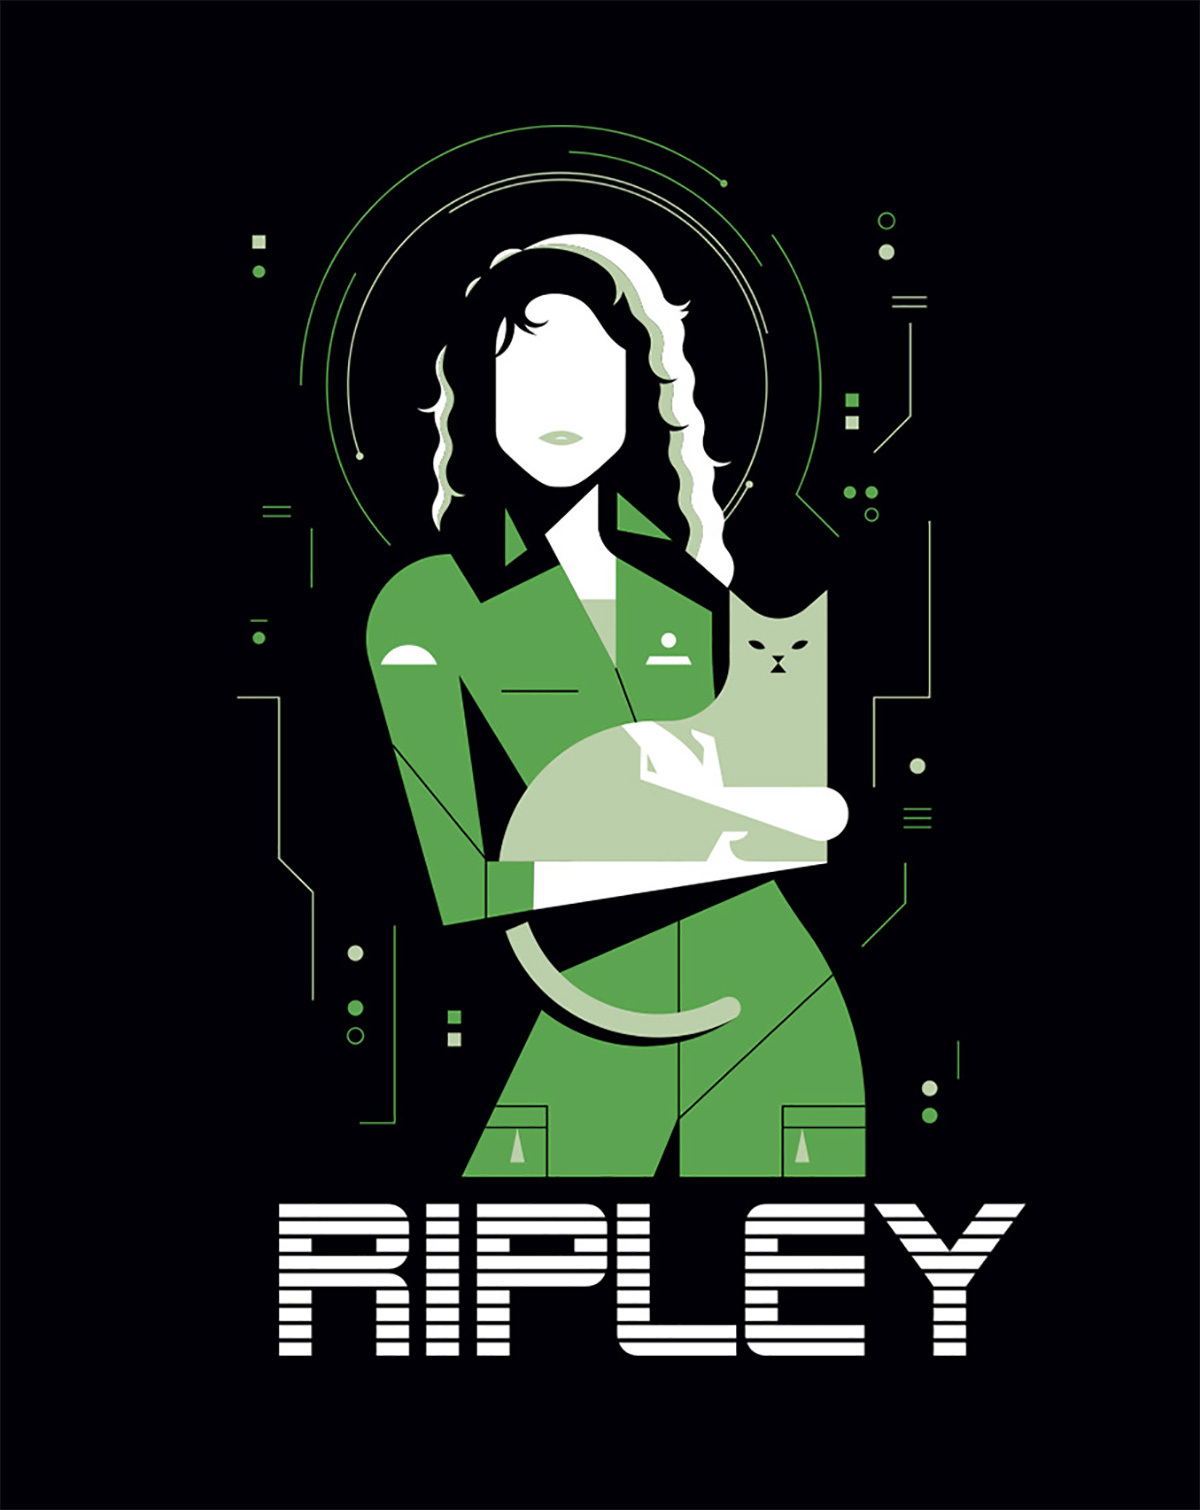 Ripley